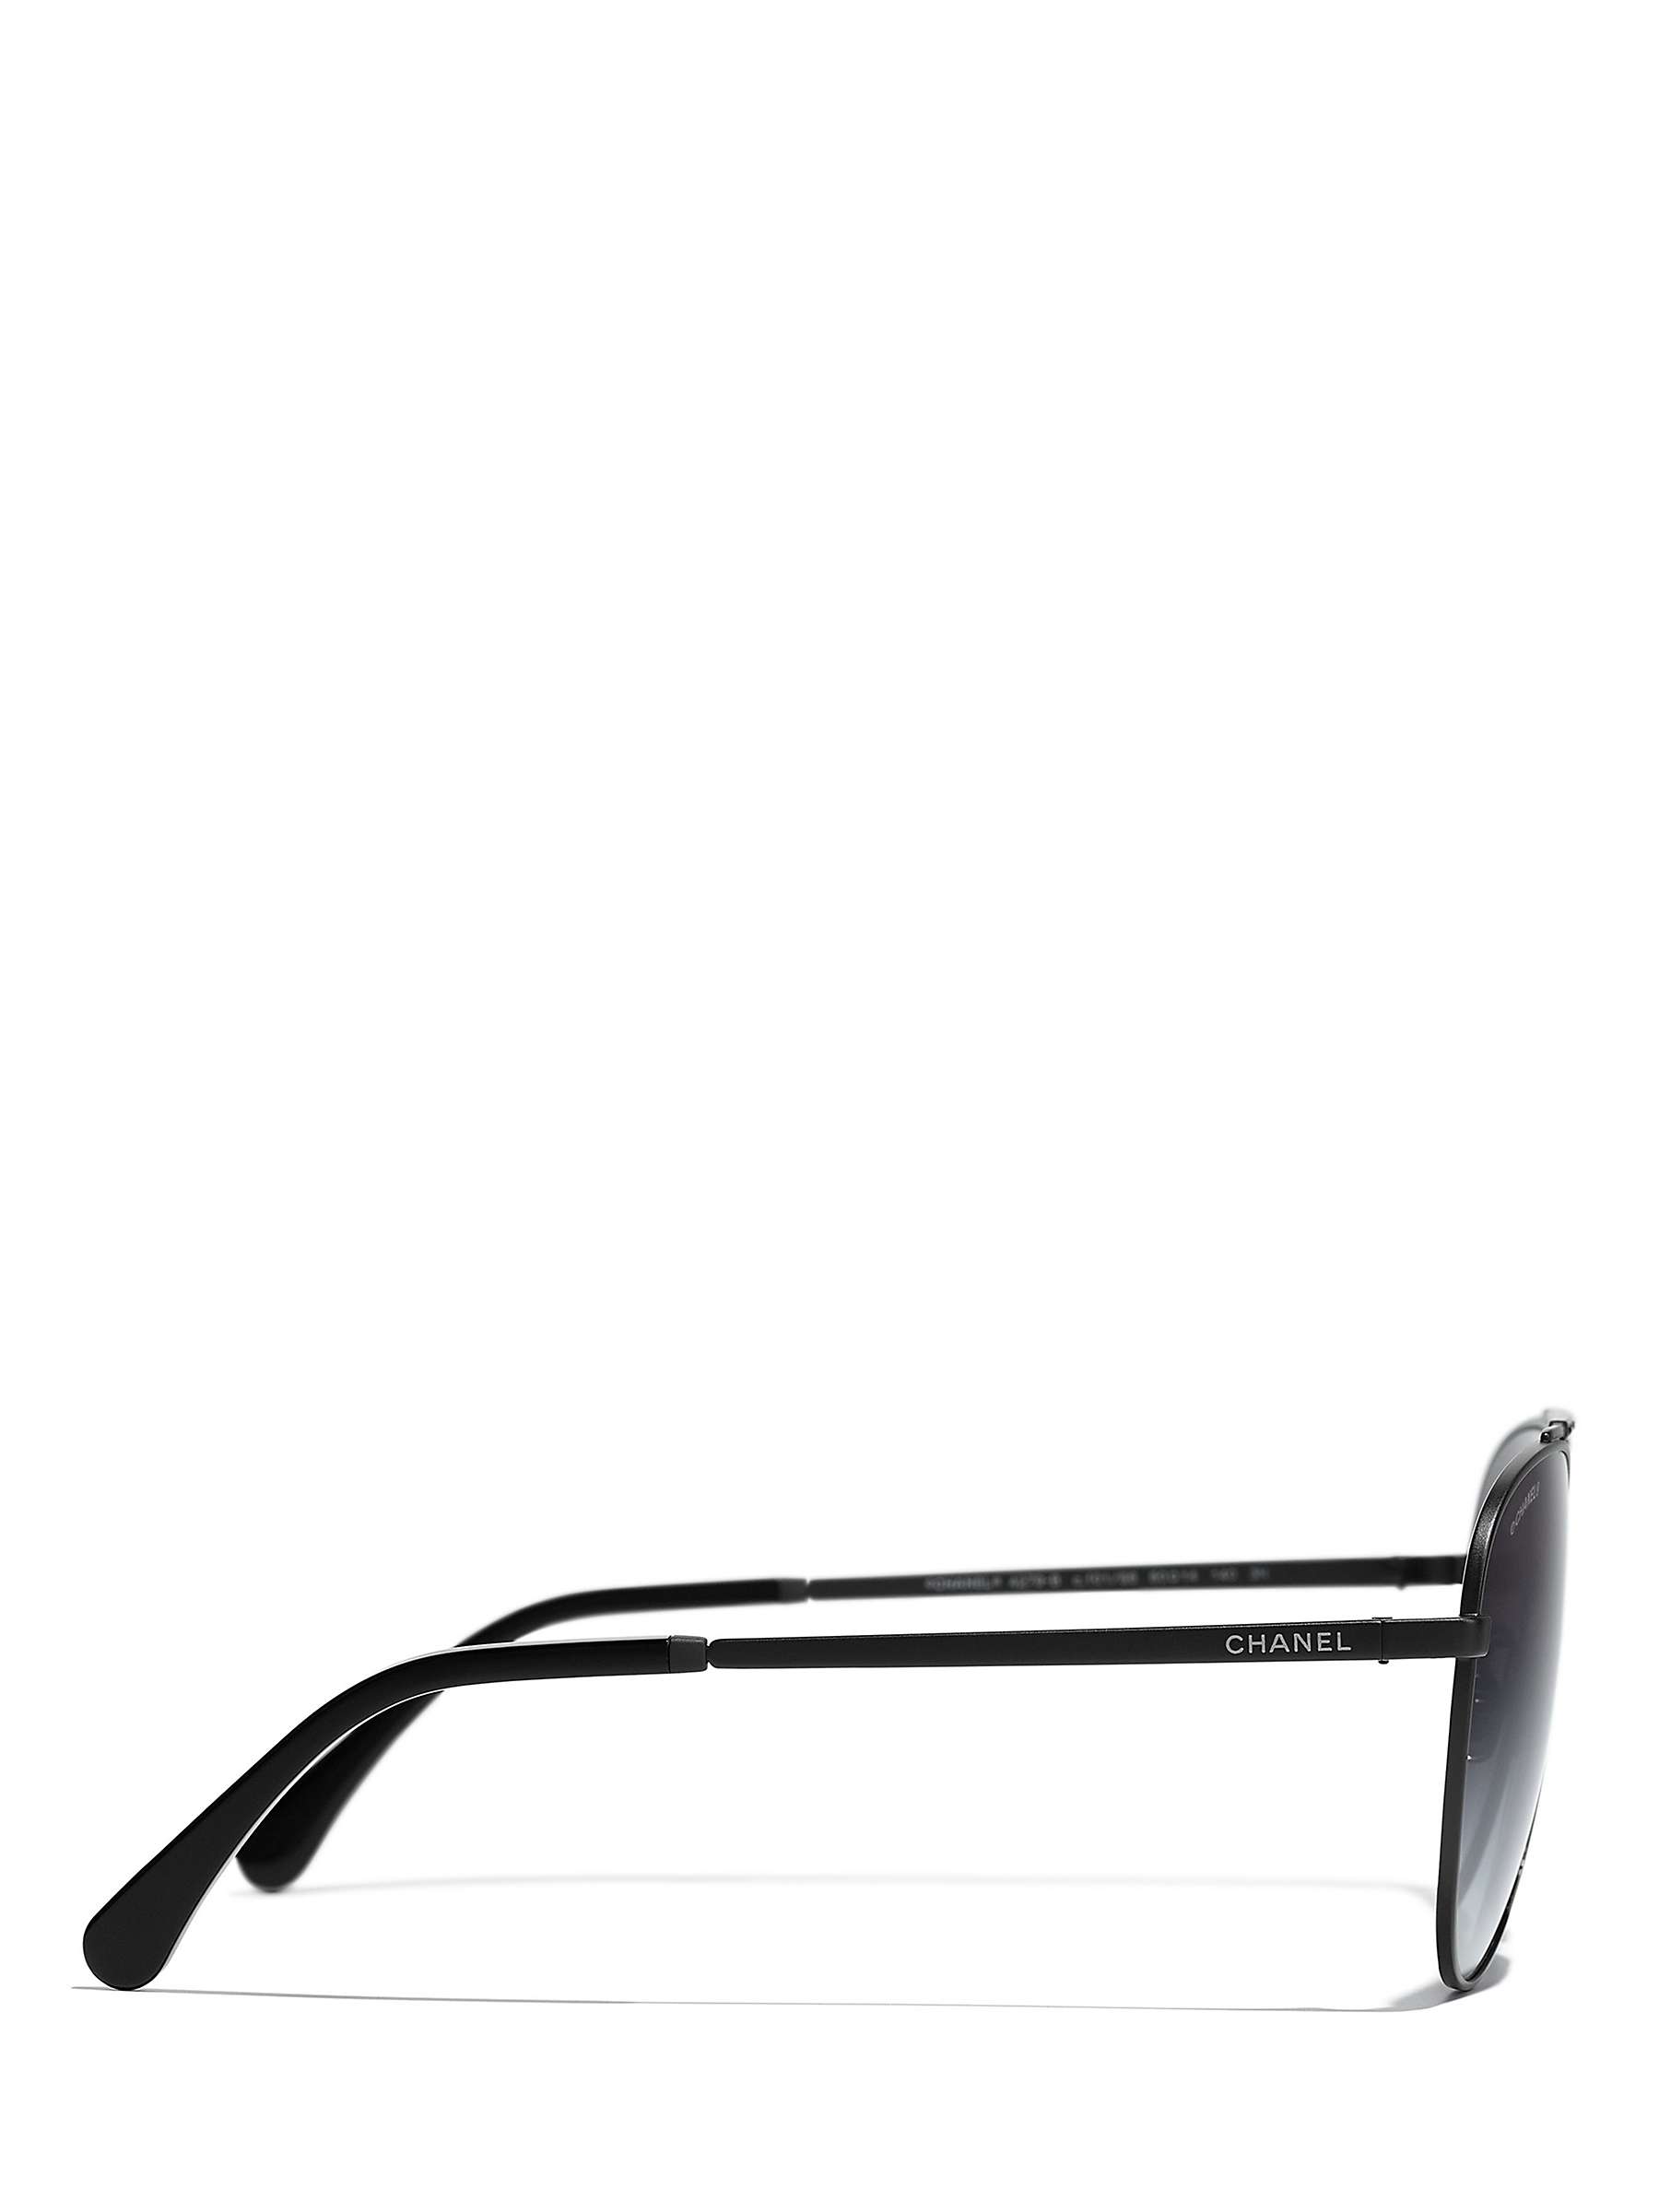 Buy CHANEL Pilot Sunglasses CH4279B Matte Black/Blue Gradient Online at johnlewis.com